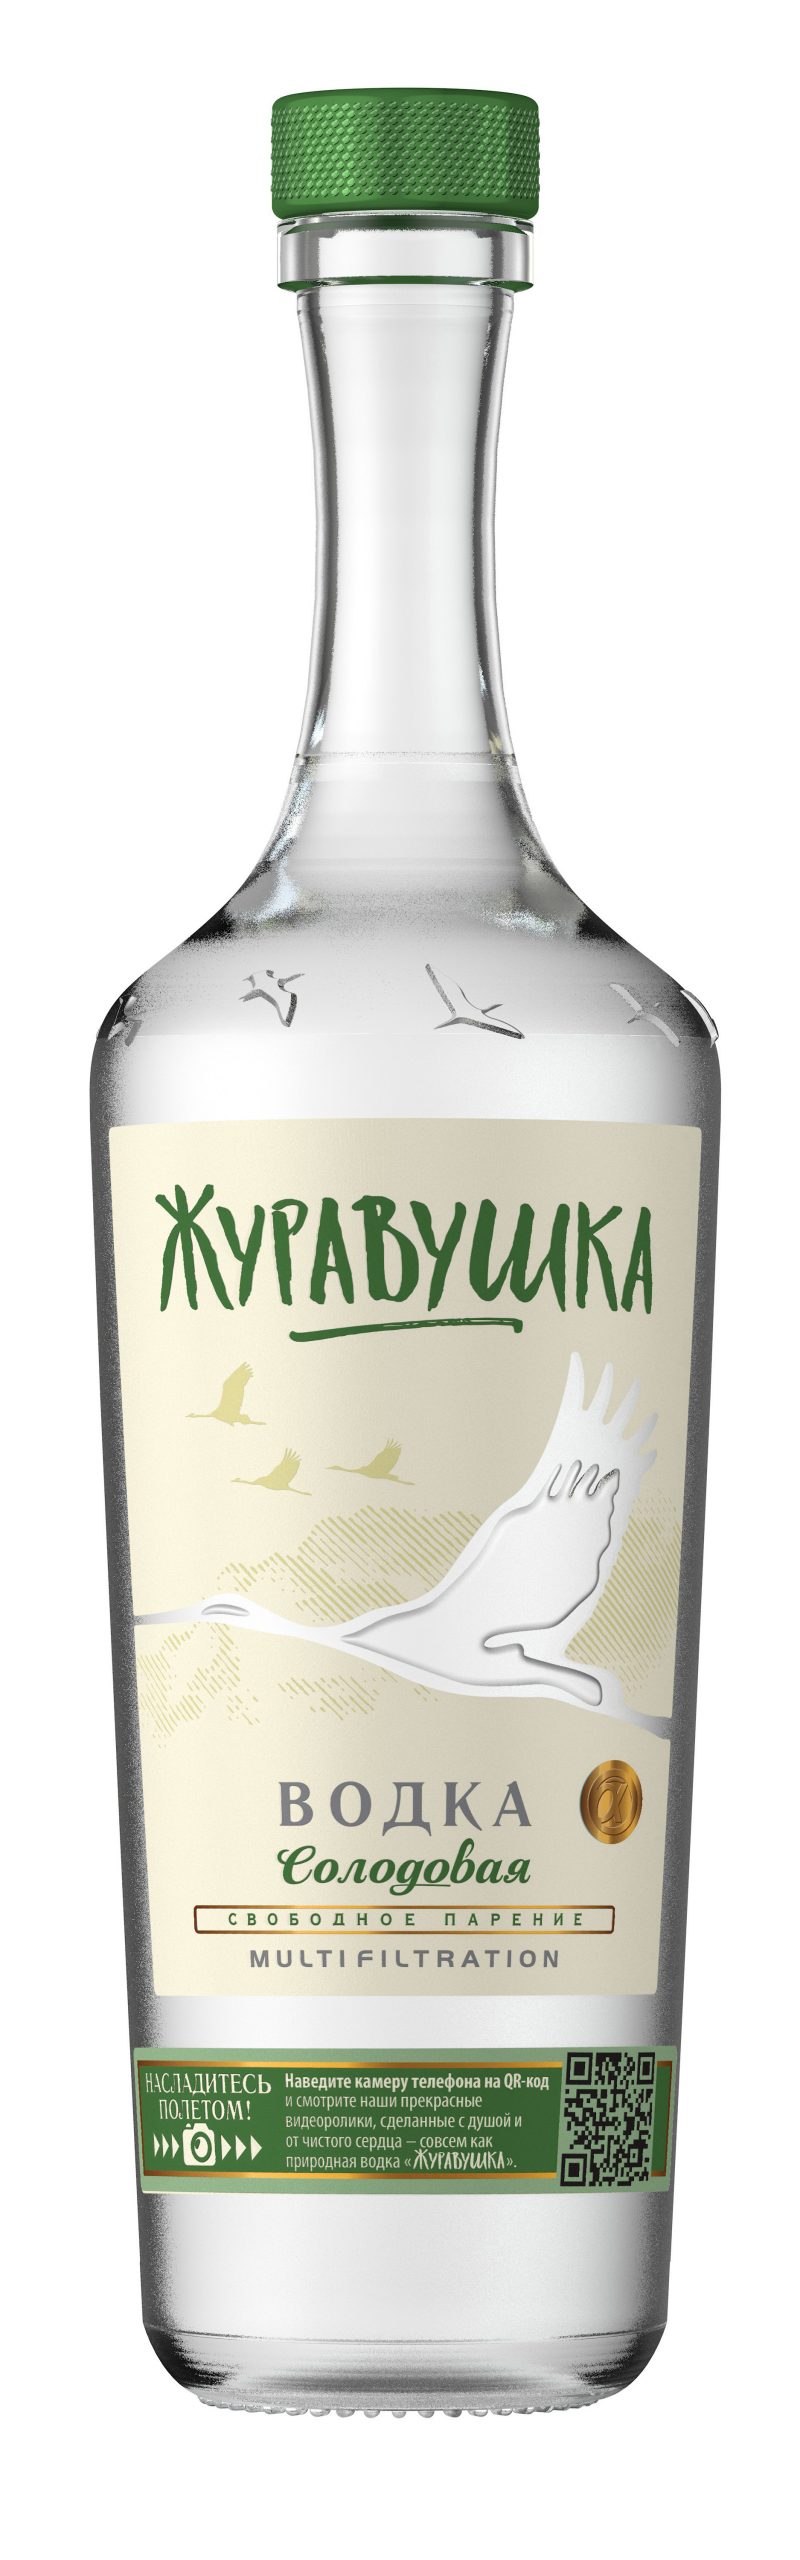 Vodka Zhuravushka - Malt 40% 0,5 l